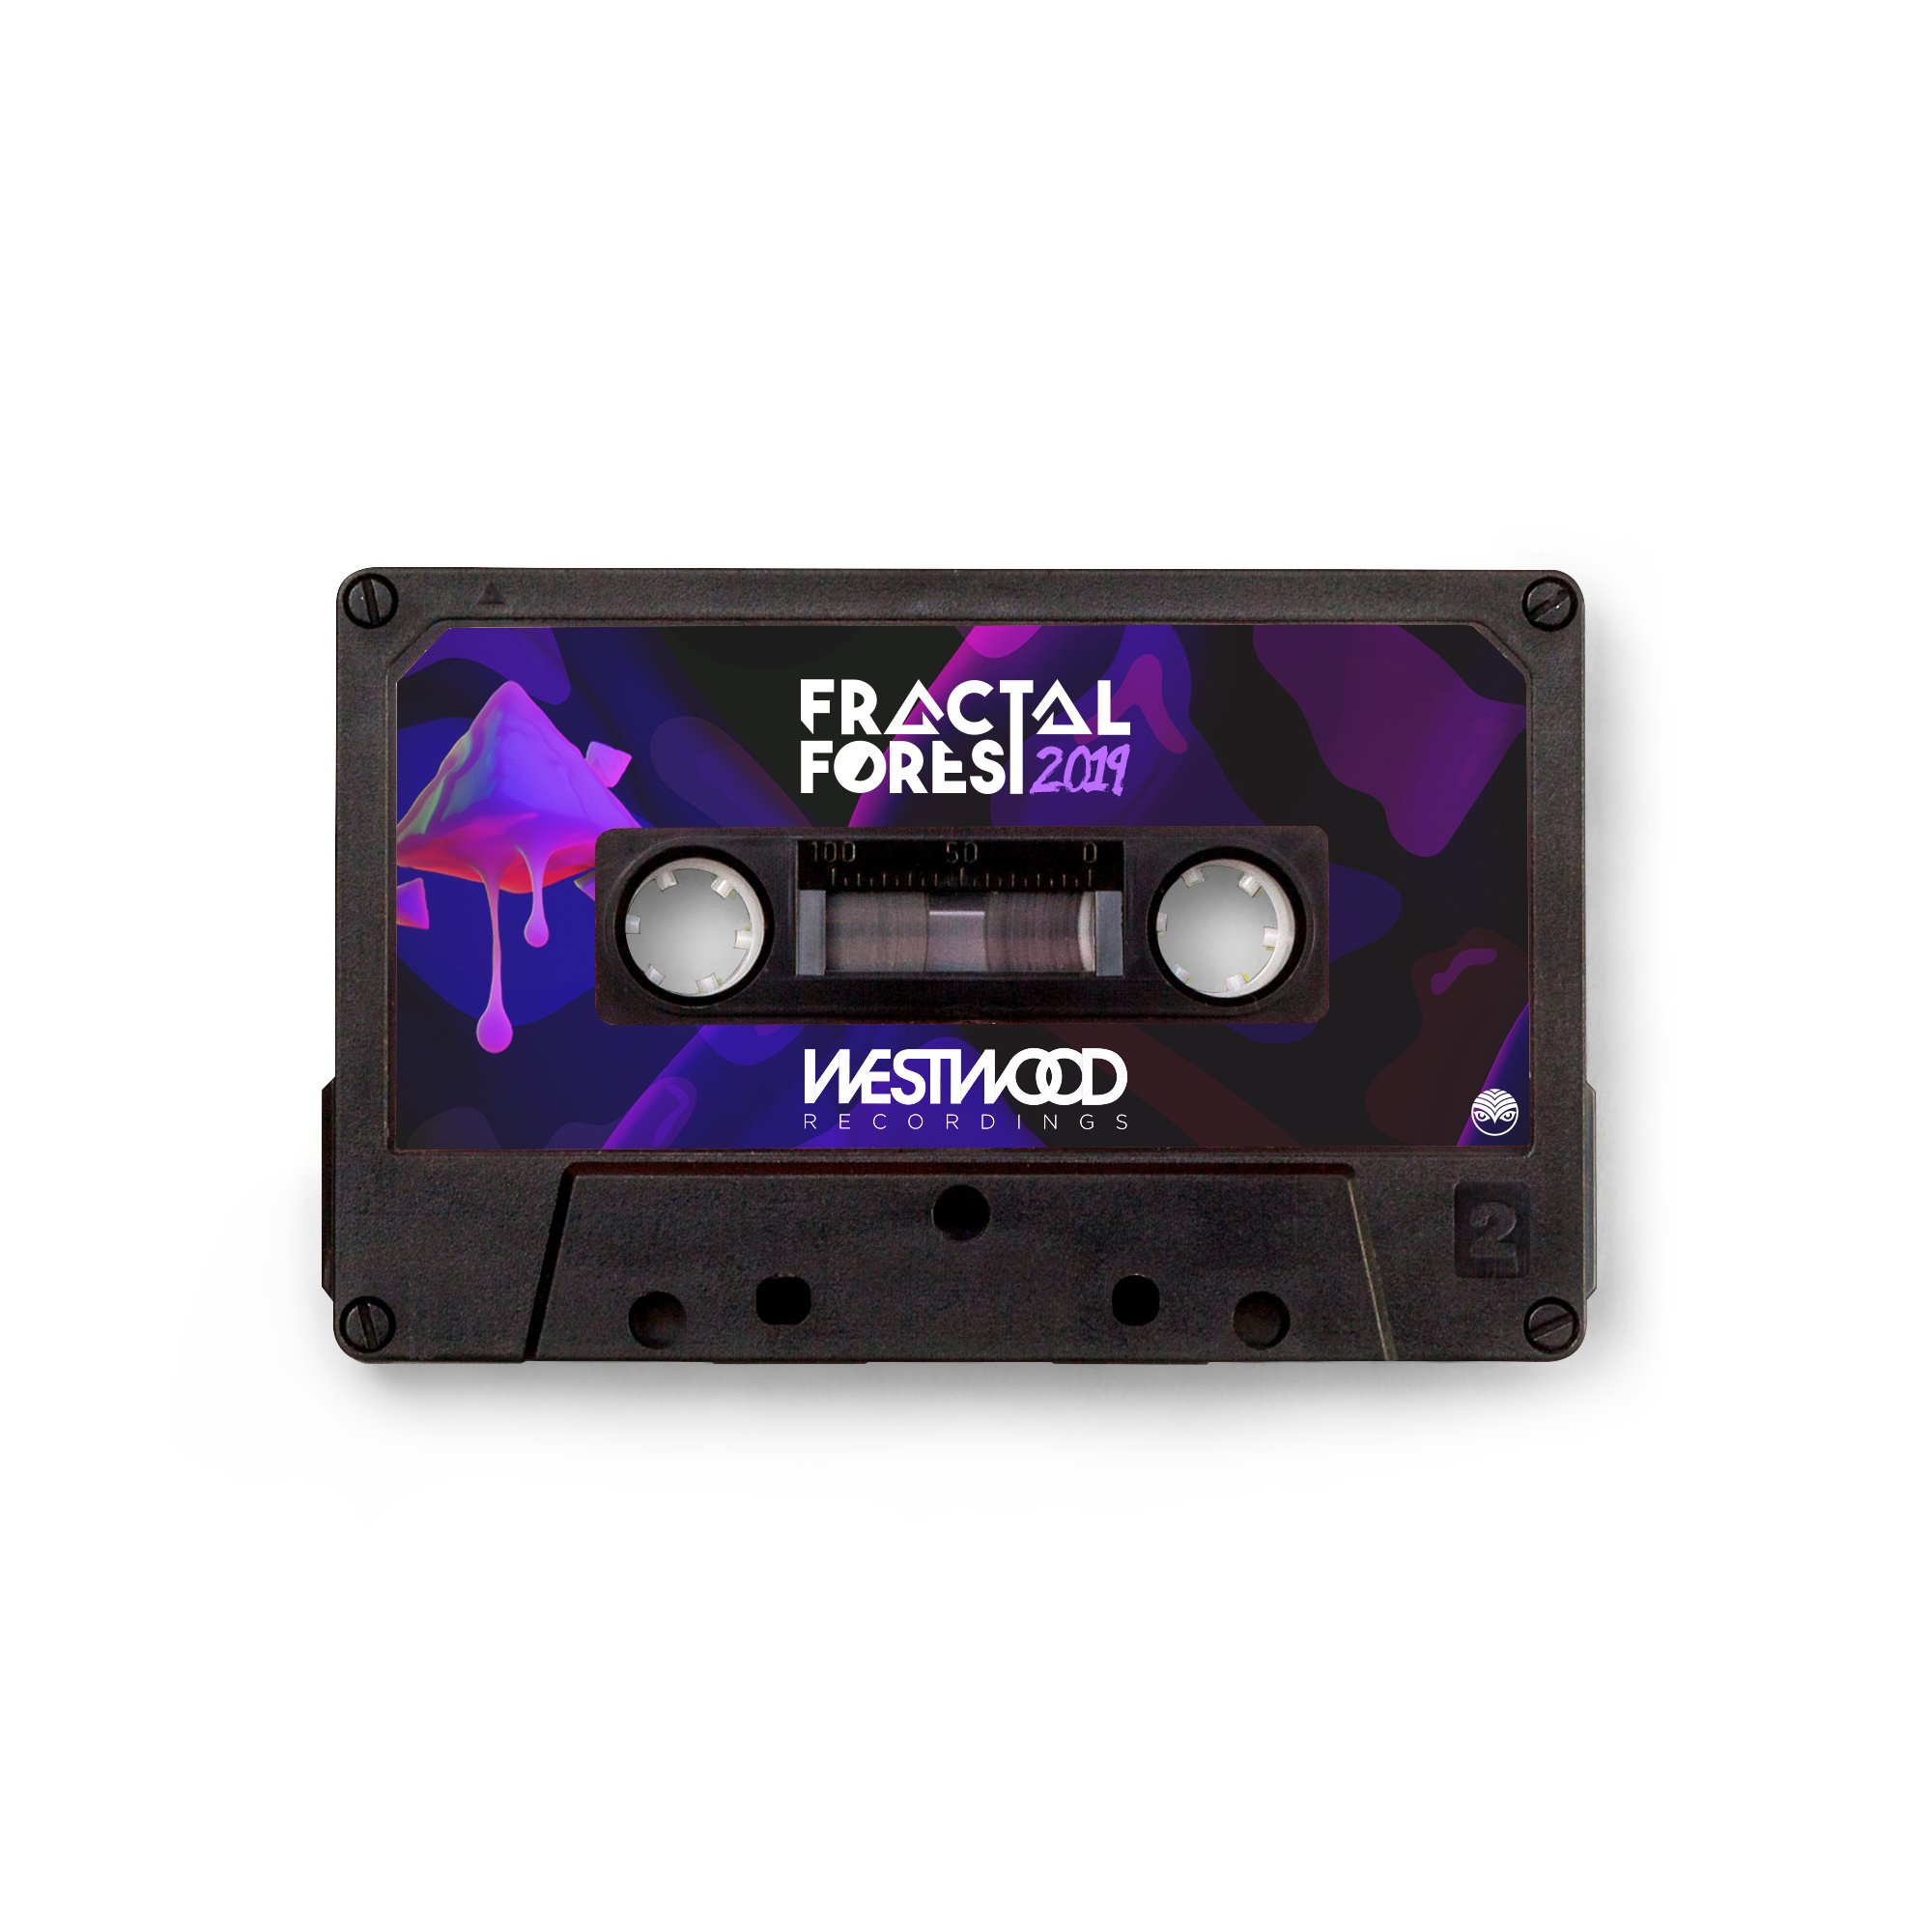 2019 Fractal Forest Compilation Cassette